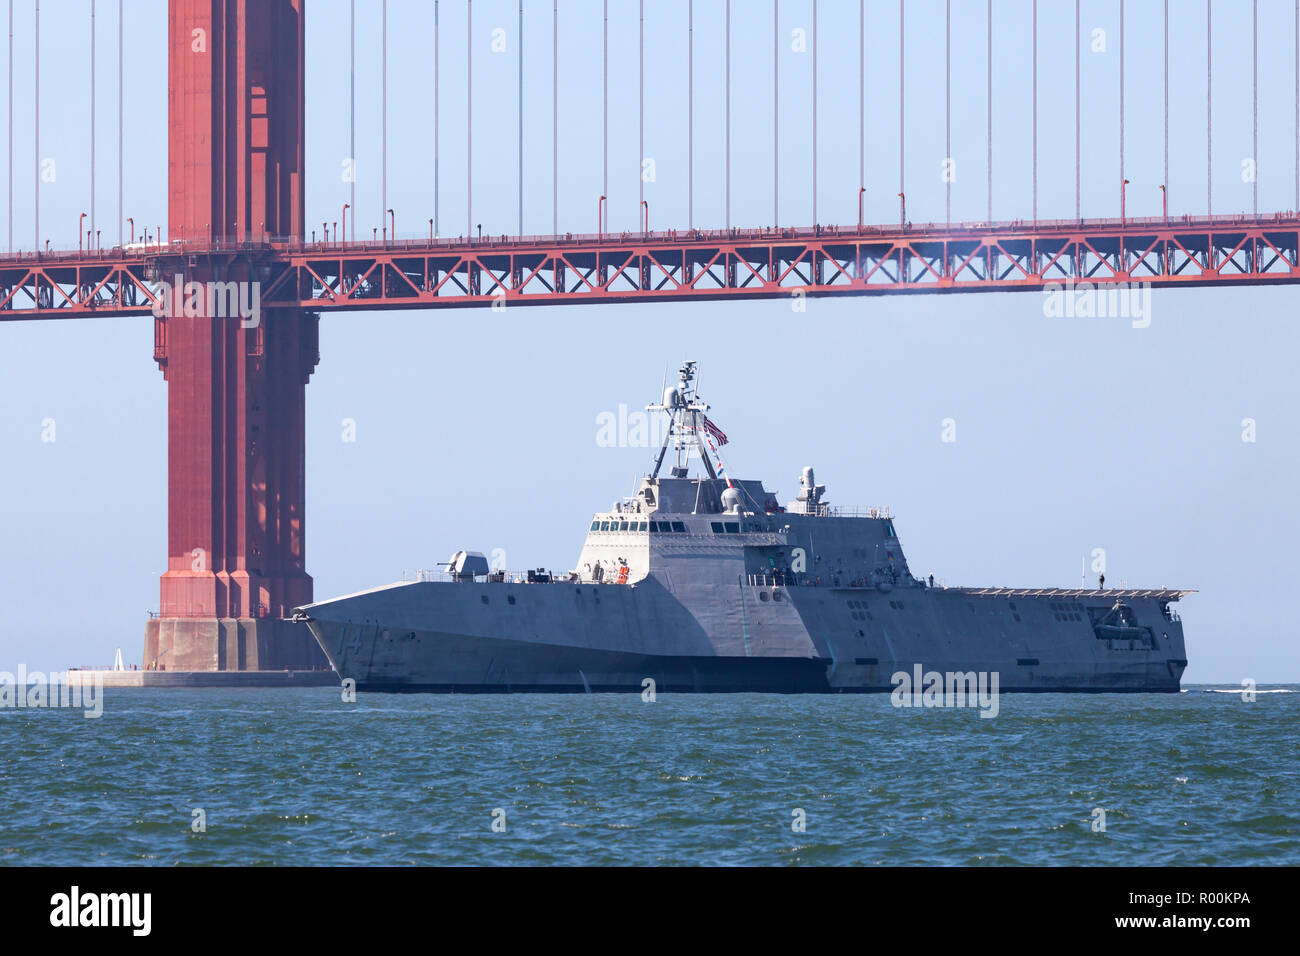 L'indépendance de combat littoral classe USS Manchester (LCS 14) entre dans la baie de San Francisco. Banque D'Images